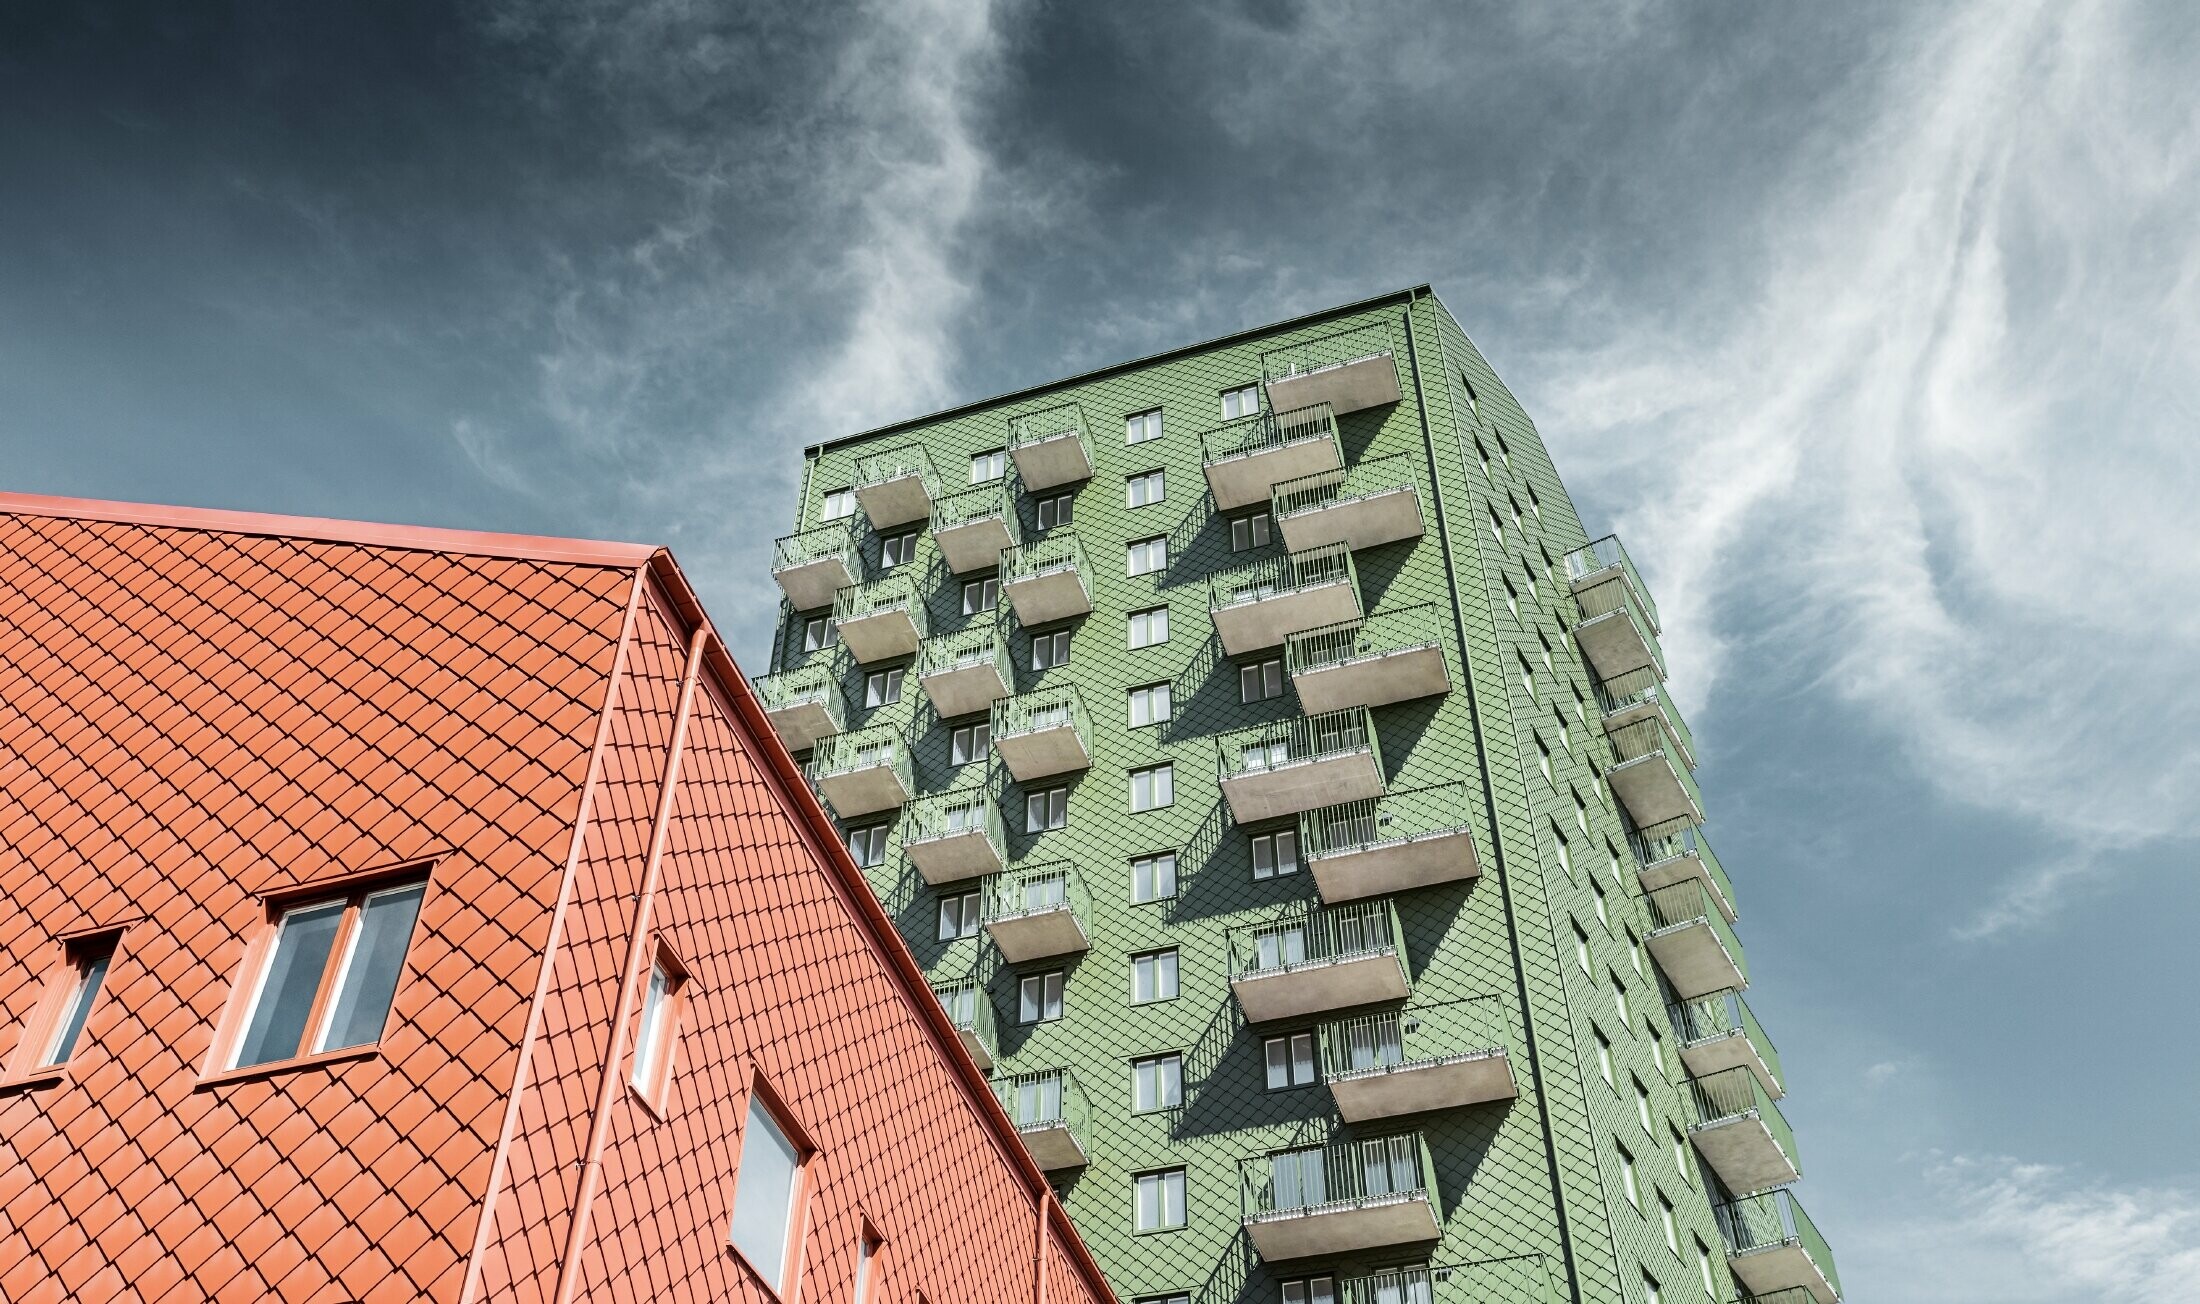 Neboderi s balkonima s fasadom oblikovanom PREFA zidnim rombom 29 × 29 u maslinasto zelenoj i ciglasto crvenoj boji